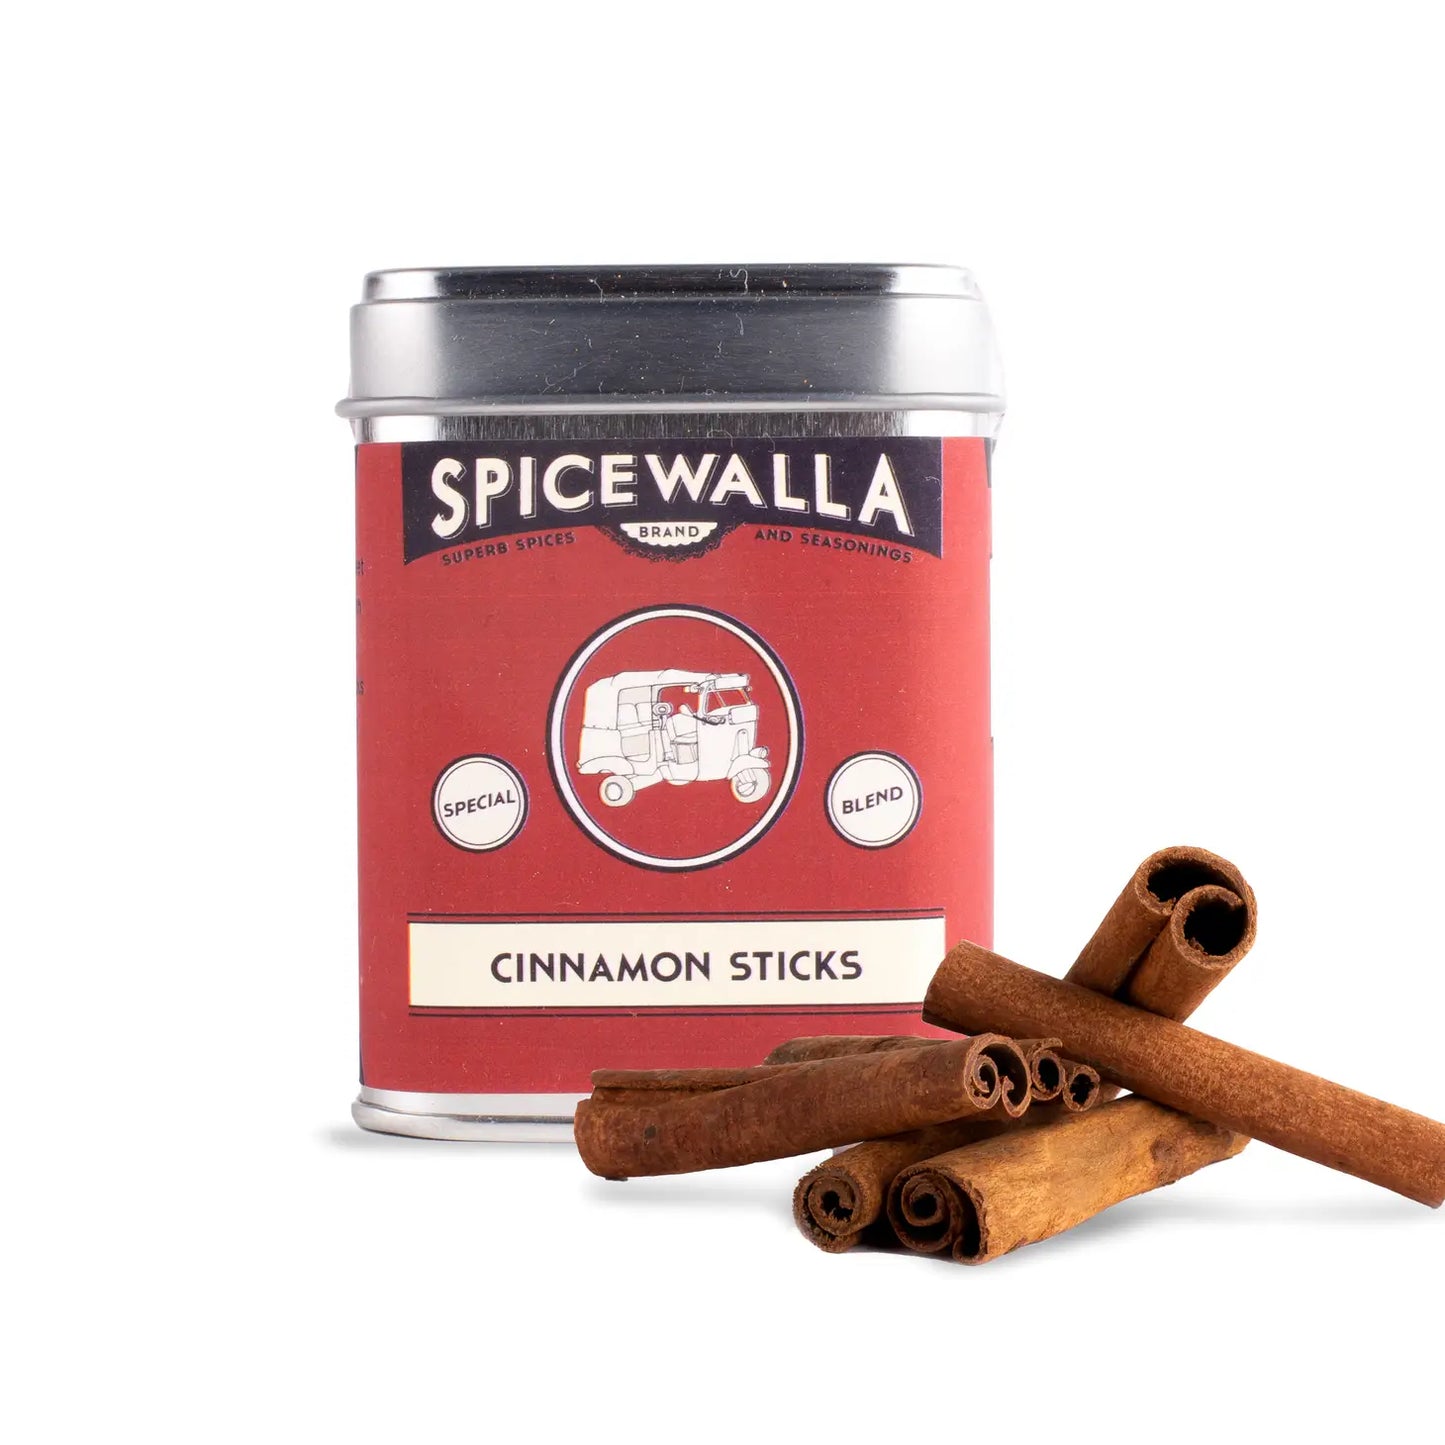 Spicewalla Herbs & Spices